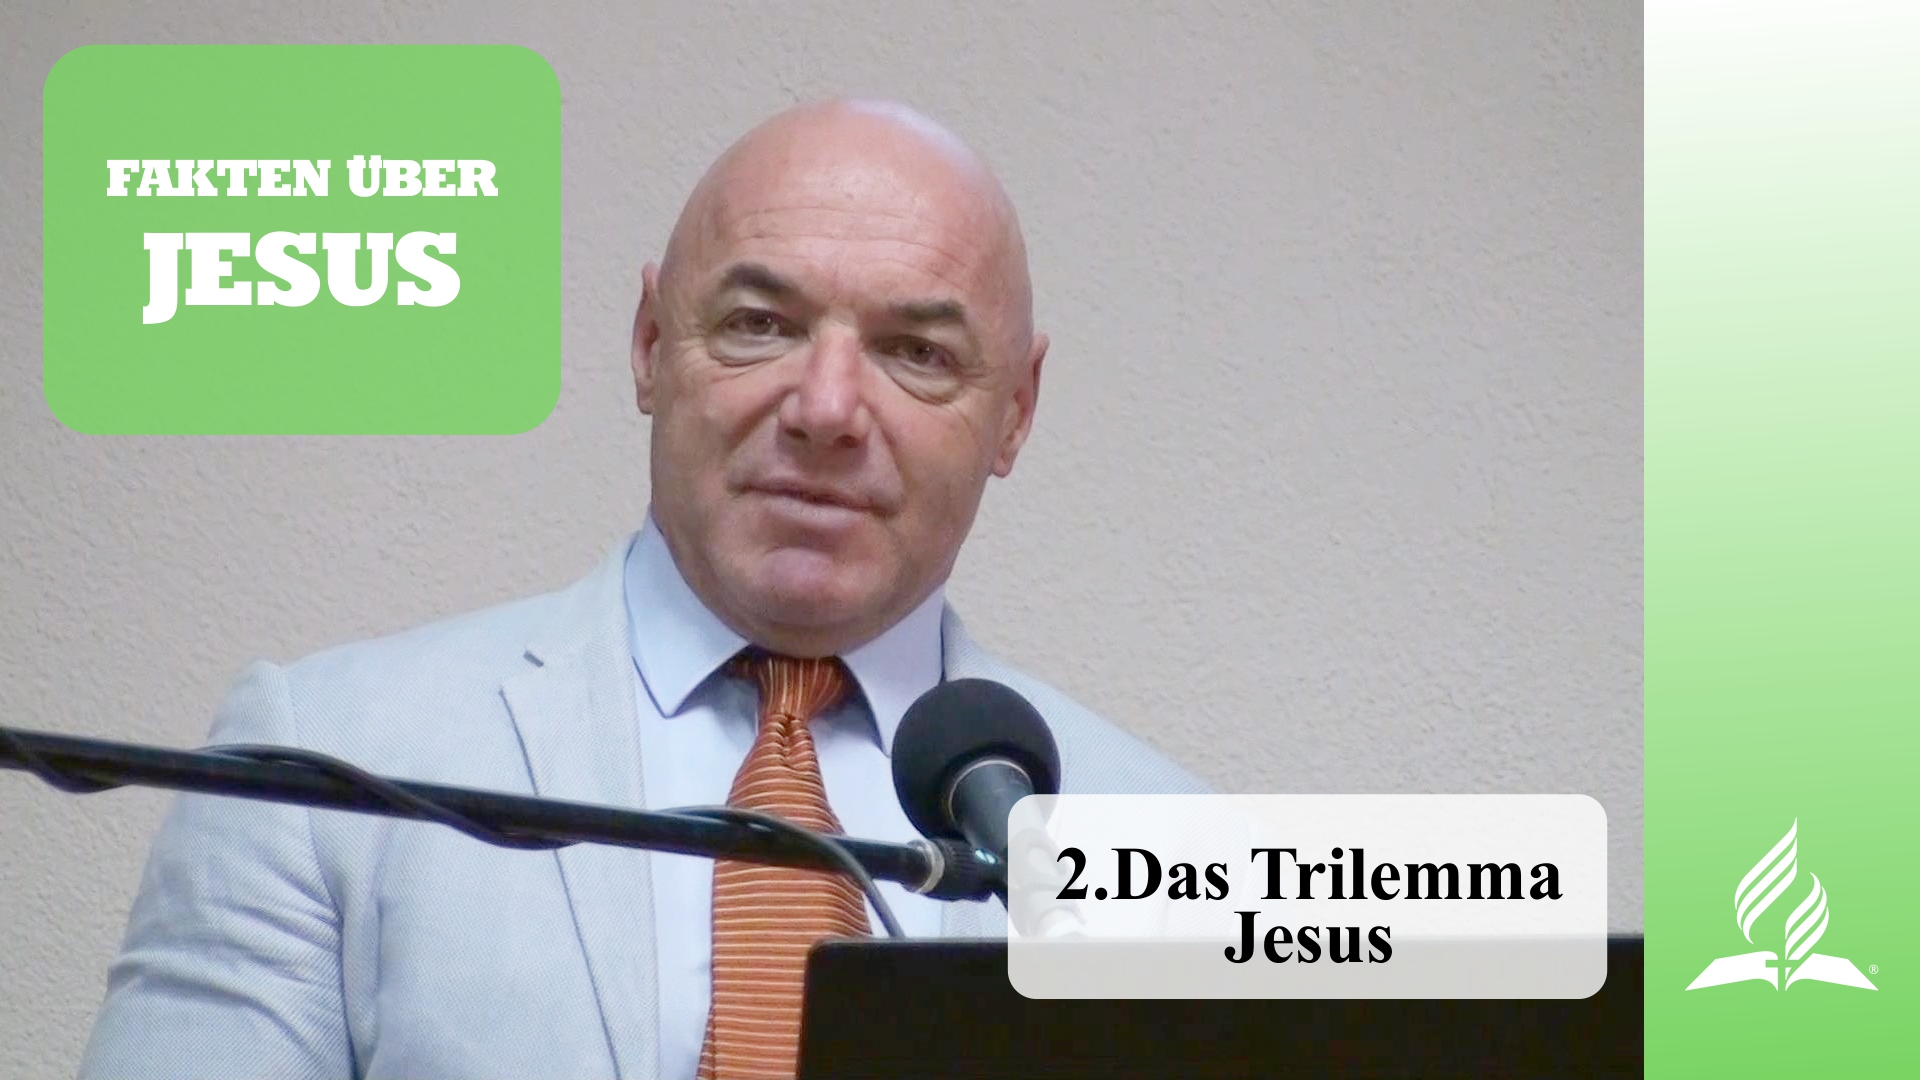 2.Das Trilemma Jesus – FAKTEN ÜBER JESUS | Dr. med. univ. Klaus Gstirner